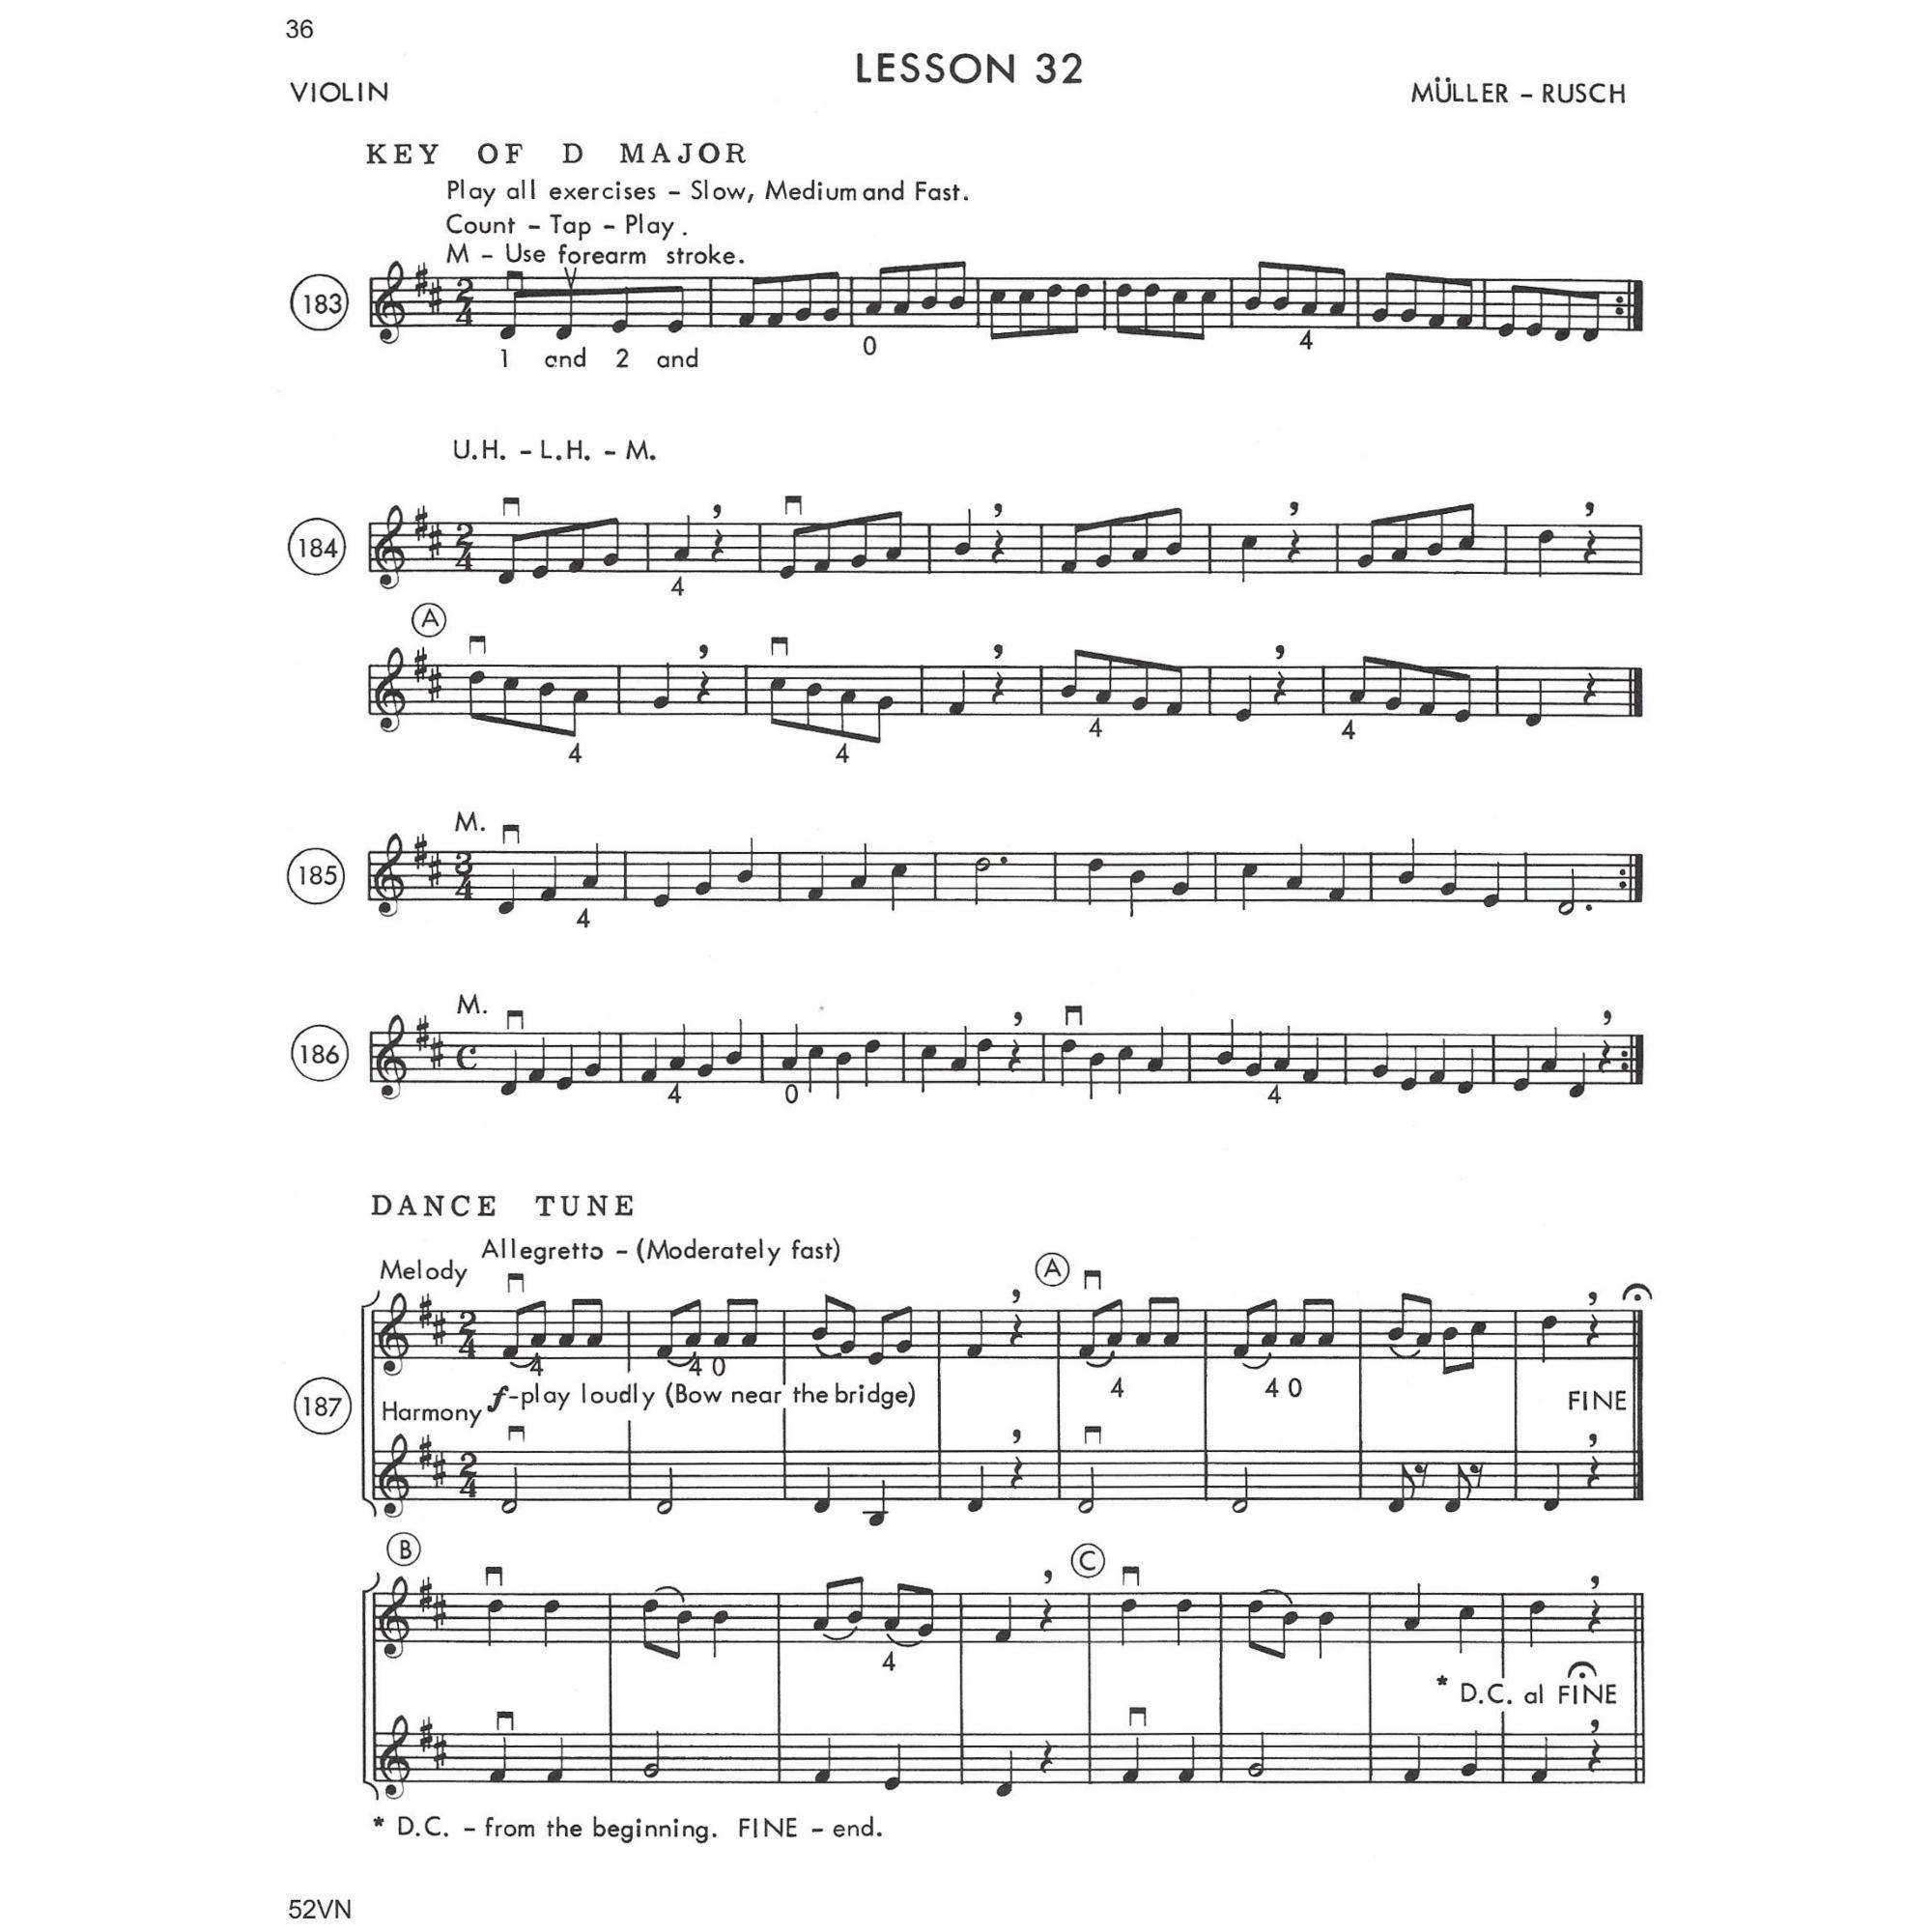 Sample: Violin (Pg. 3/36)